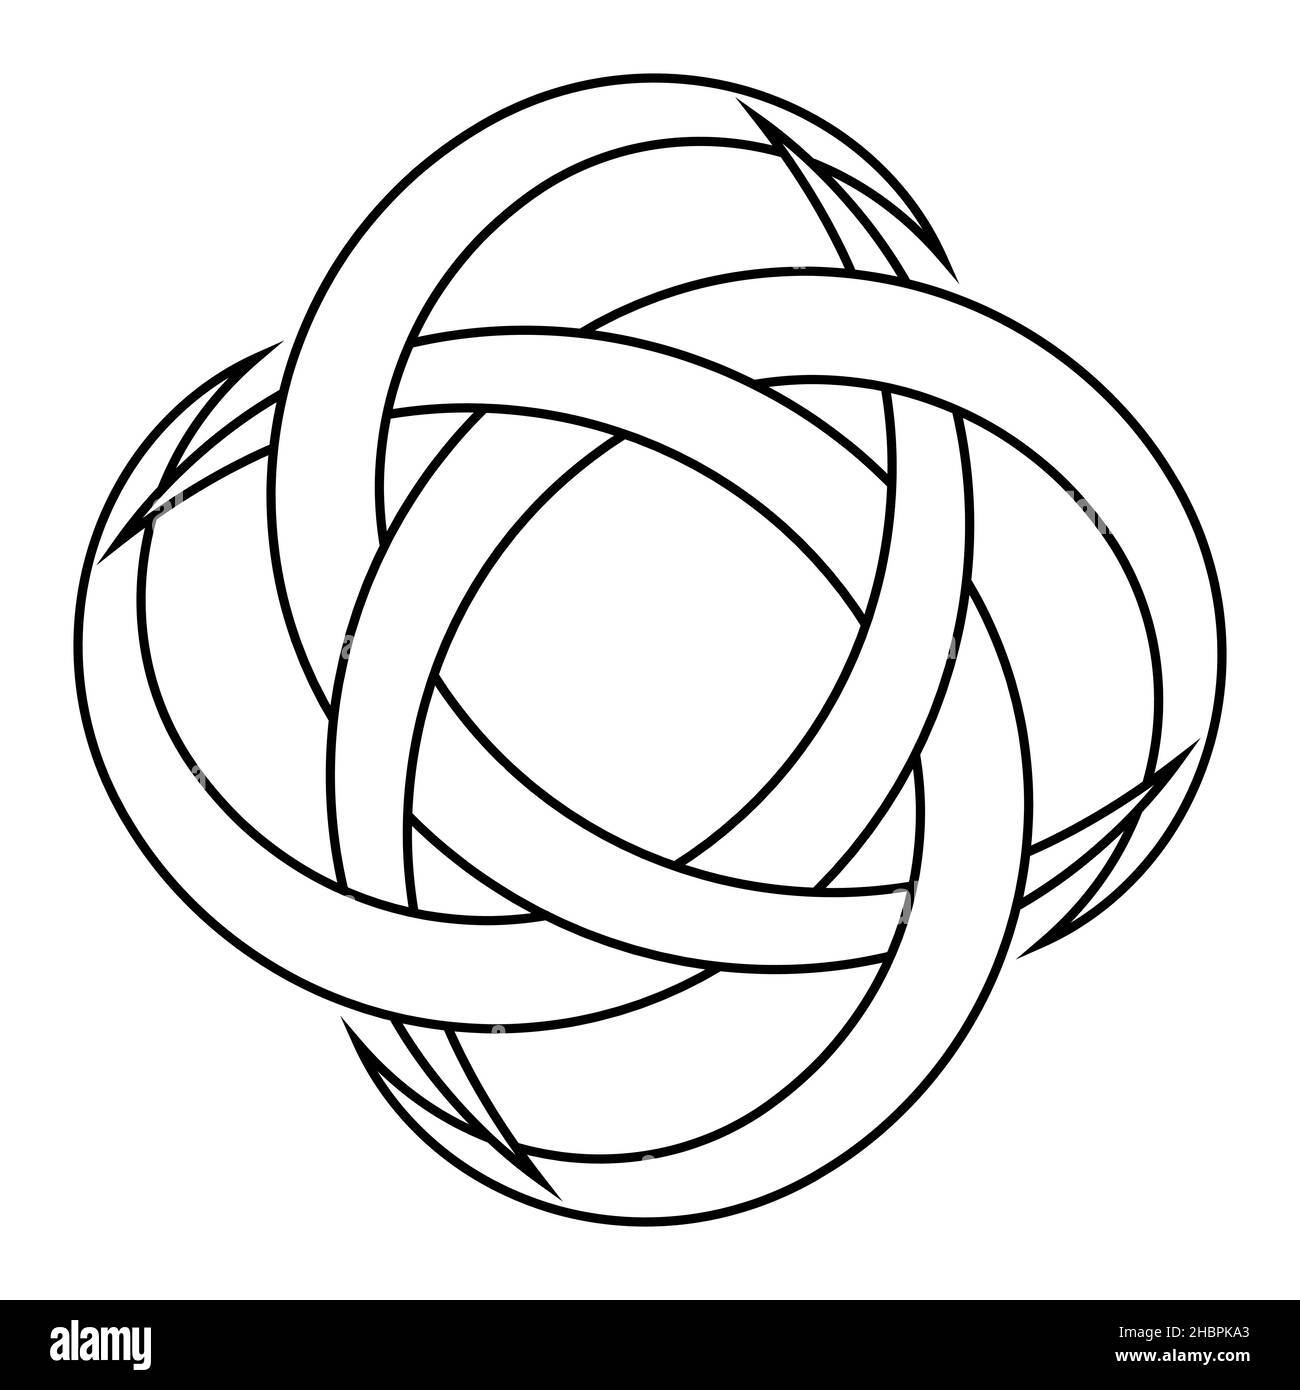 Logotipo tatuaje circular y radial luna creciente símbolo de prosperidad y buena suerte Ilustración del Vector